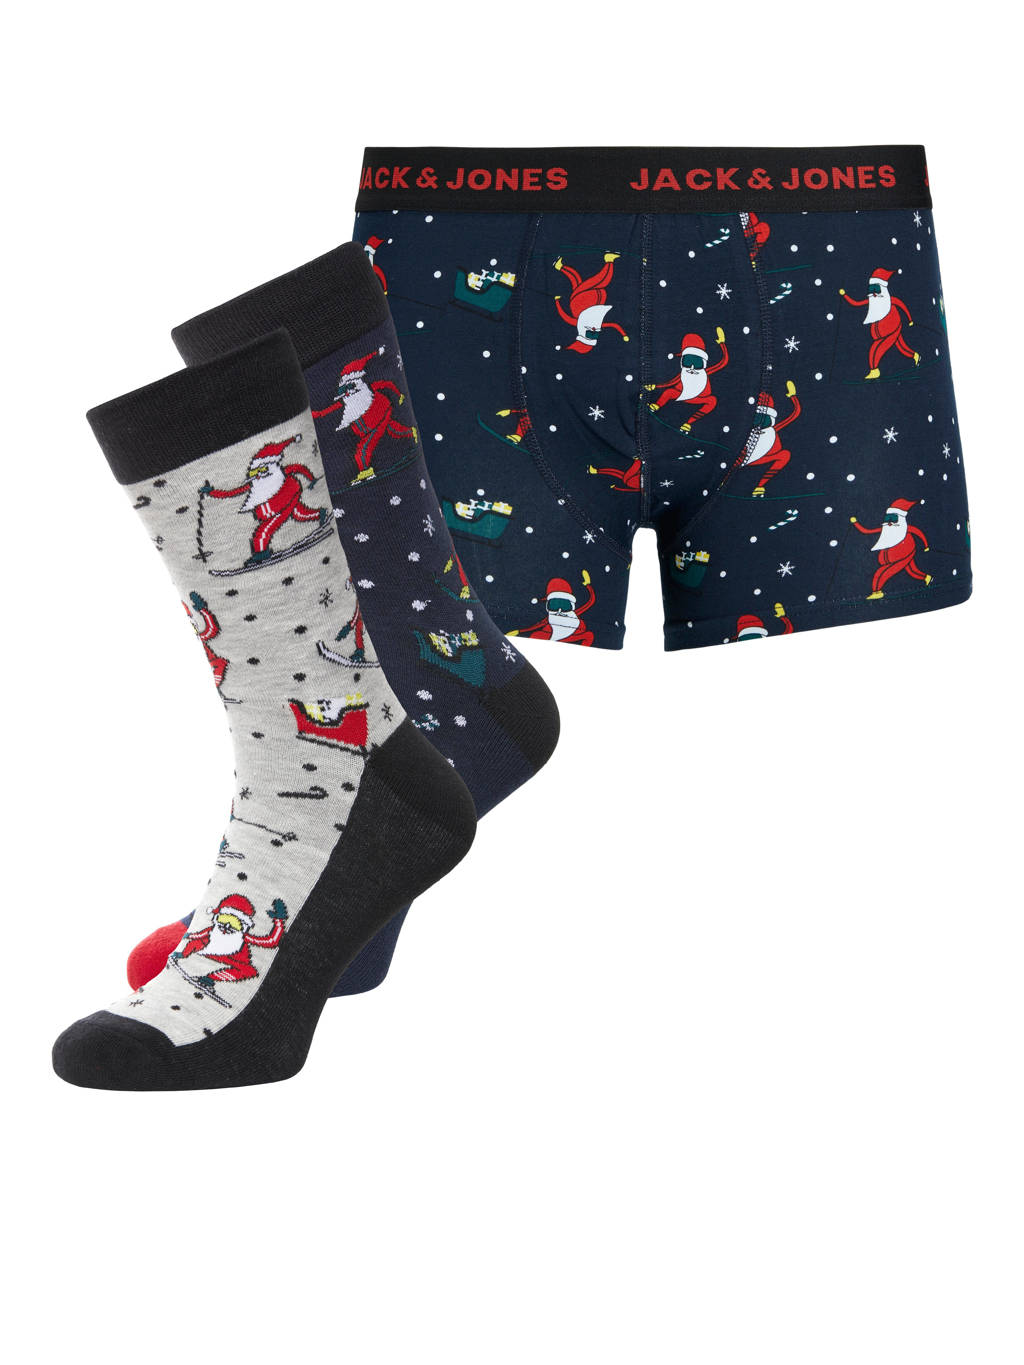 JACK & JONES giftbox boxershort + sokken JACDEGAR (set van 3) kerst, Donkerblauw/grijs